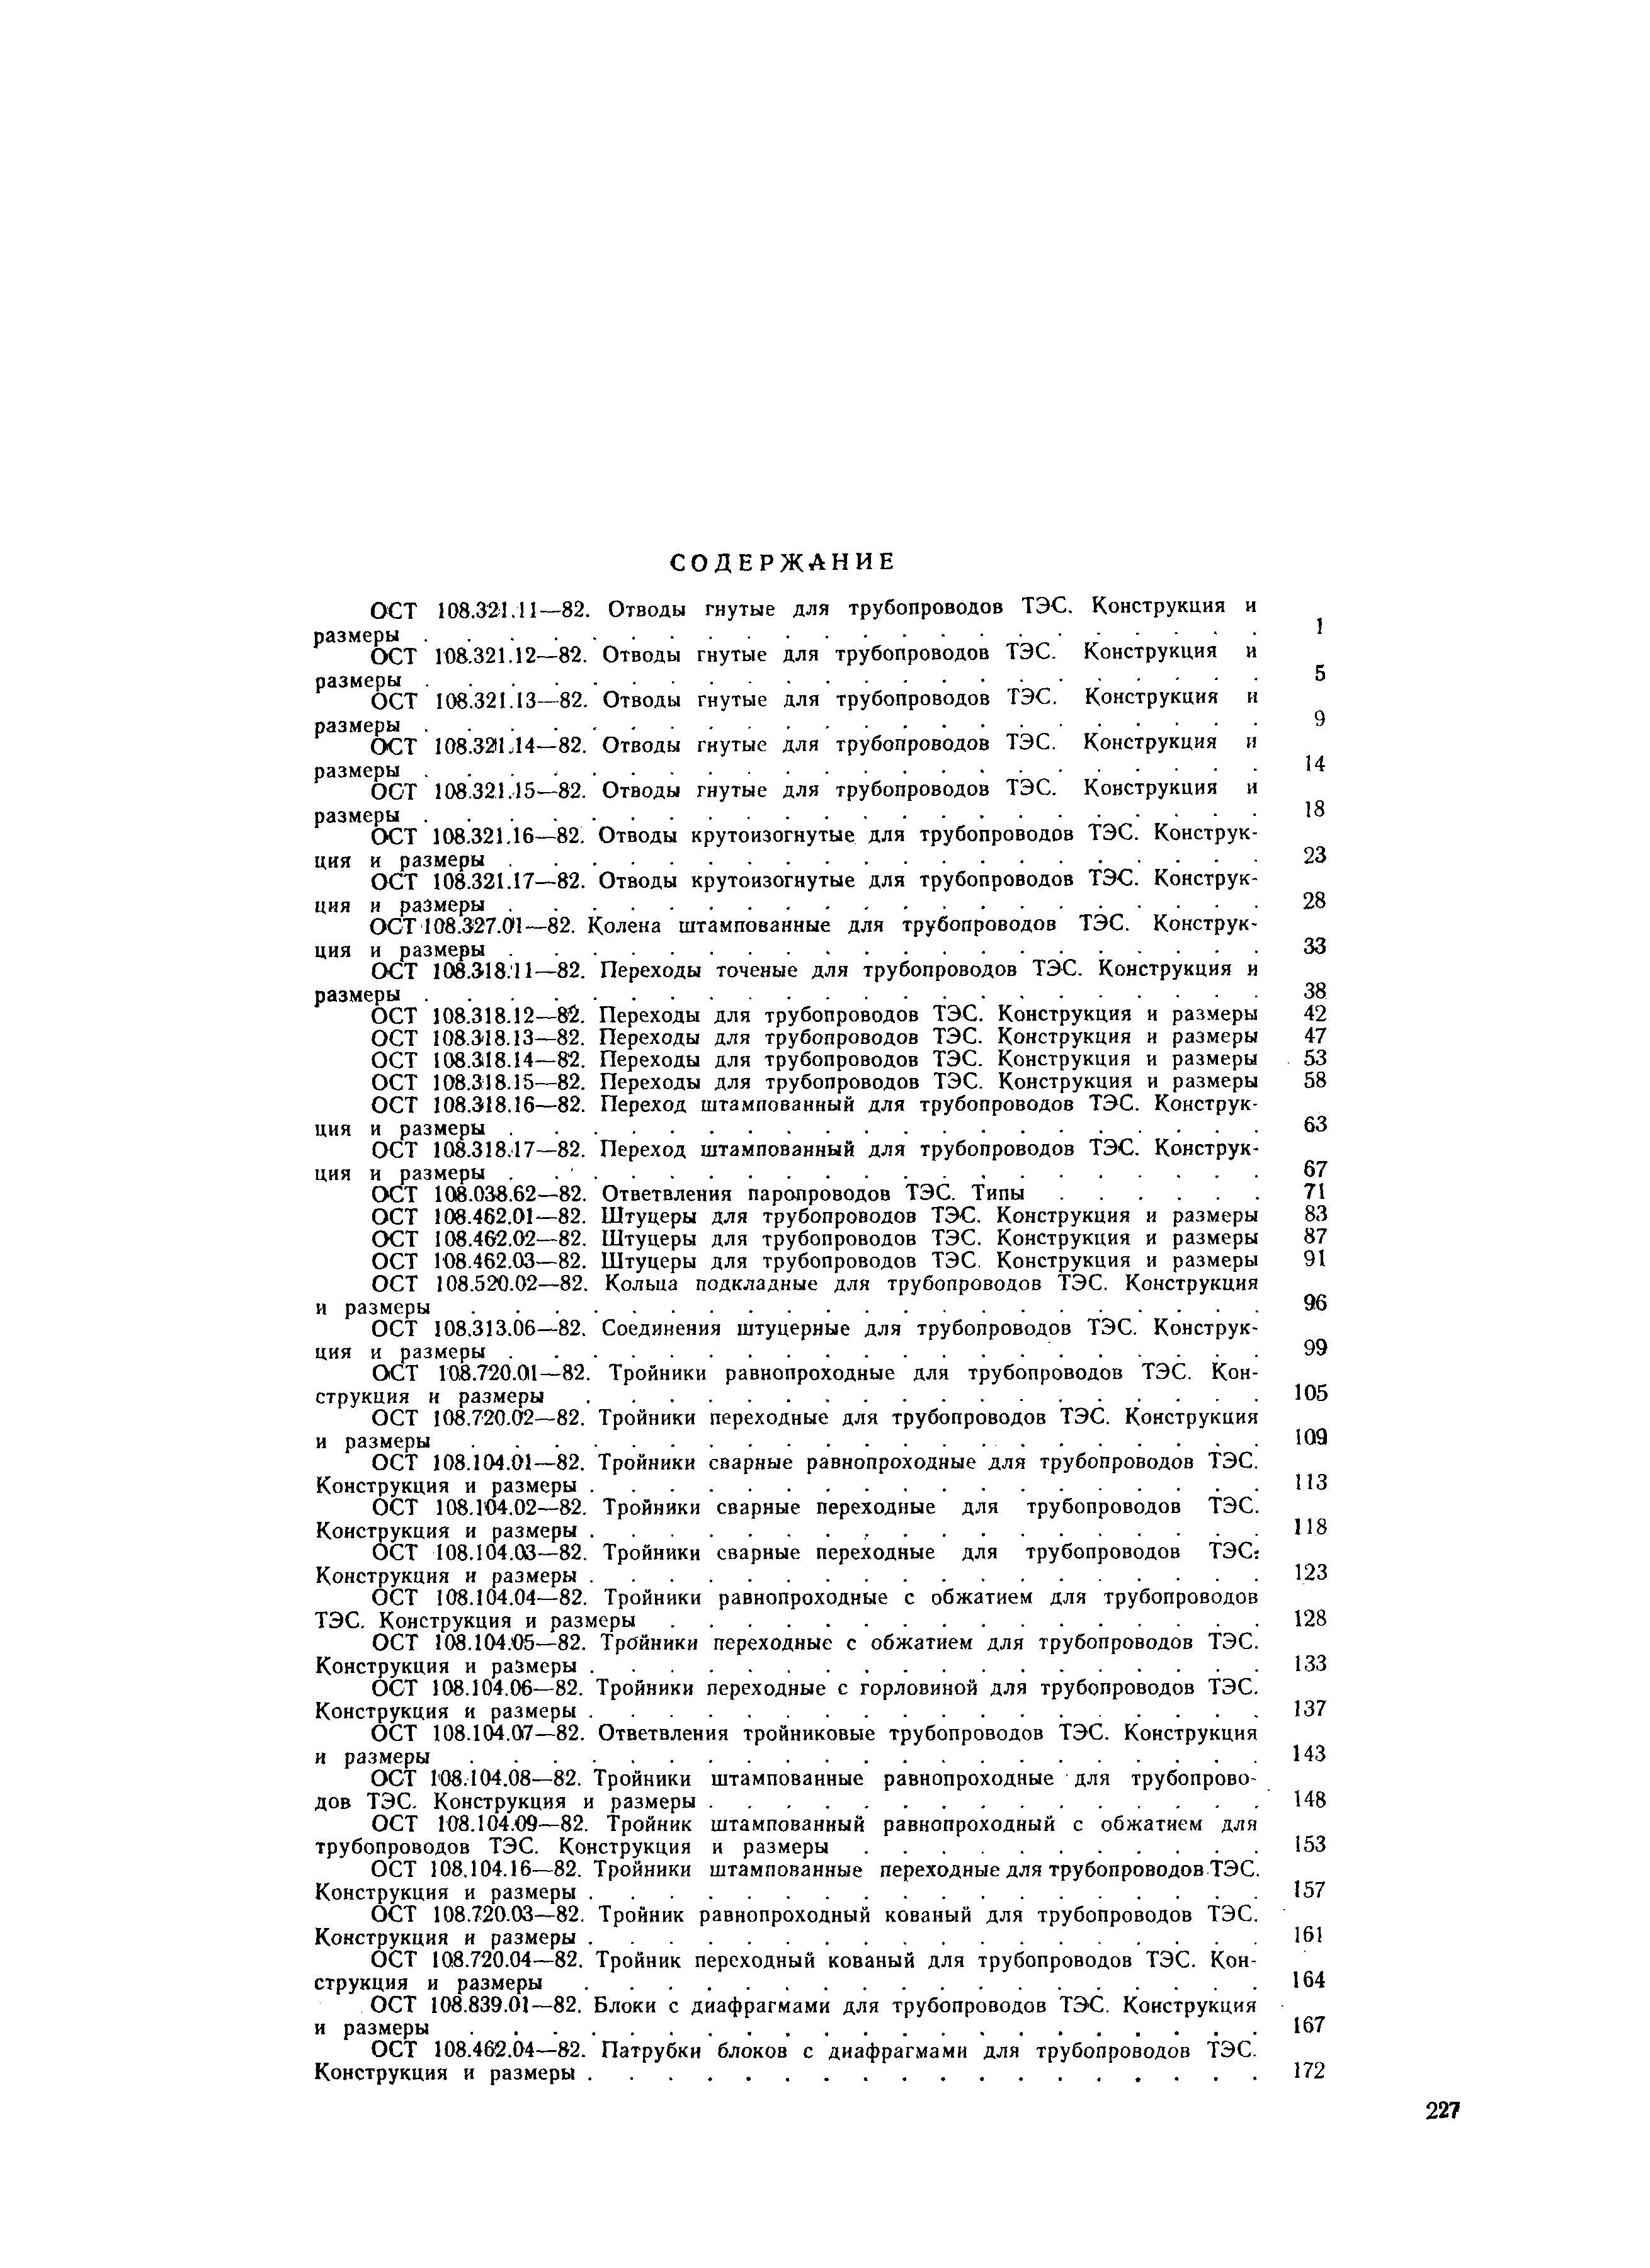 ОСТ 108.104.07-82